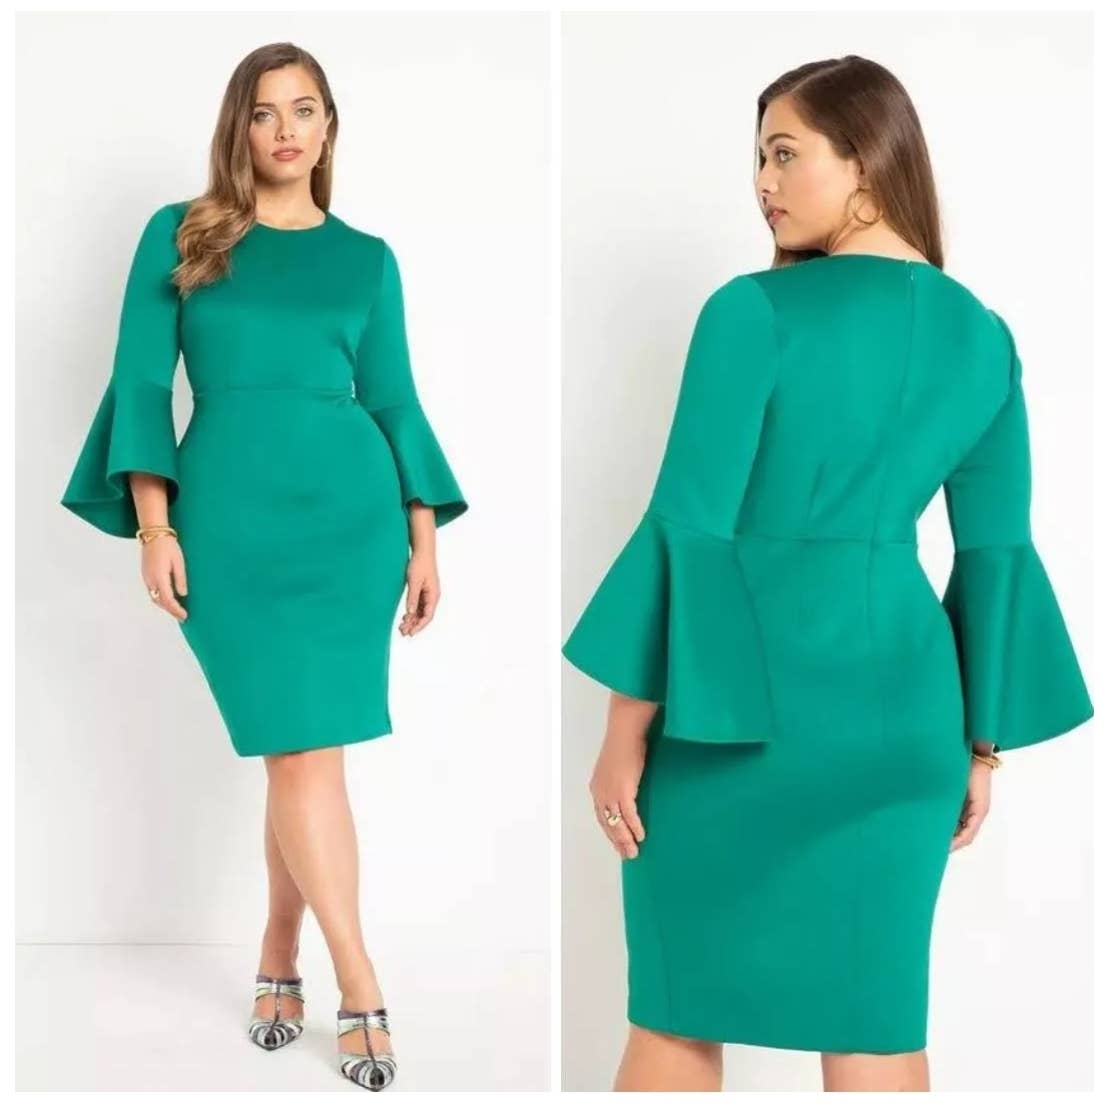 Eloquii Midi Dress Fit & Flare Bell Sleeve Green Scuba Knit Plus Size 16